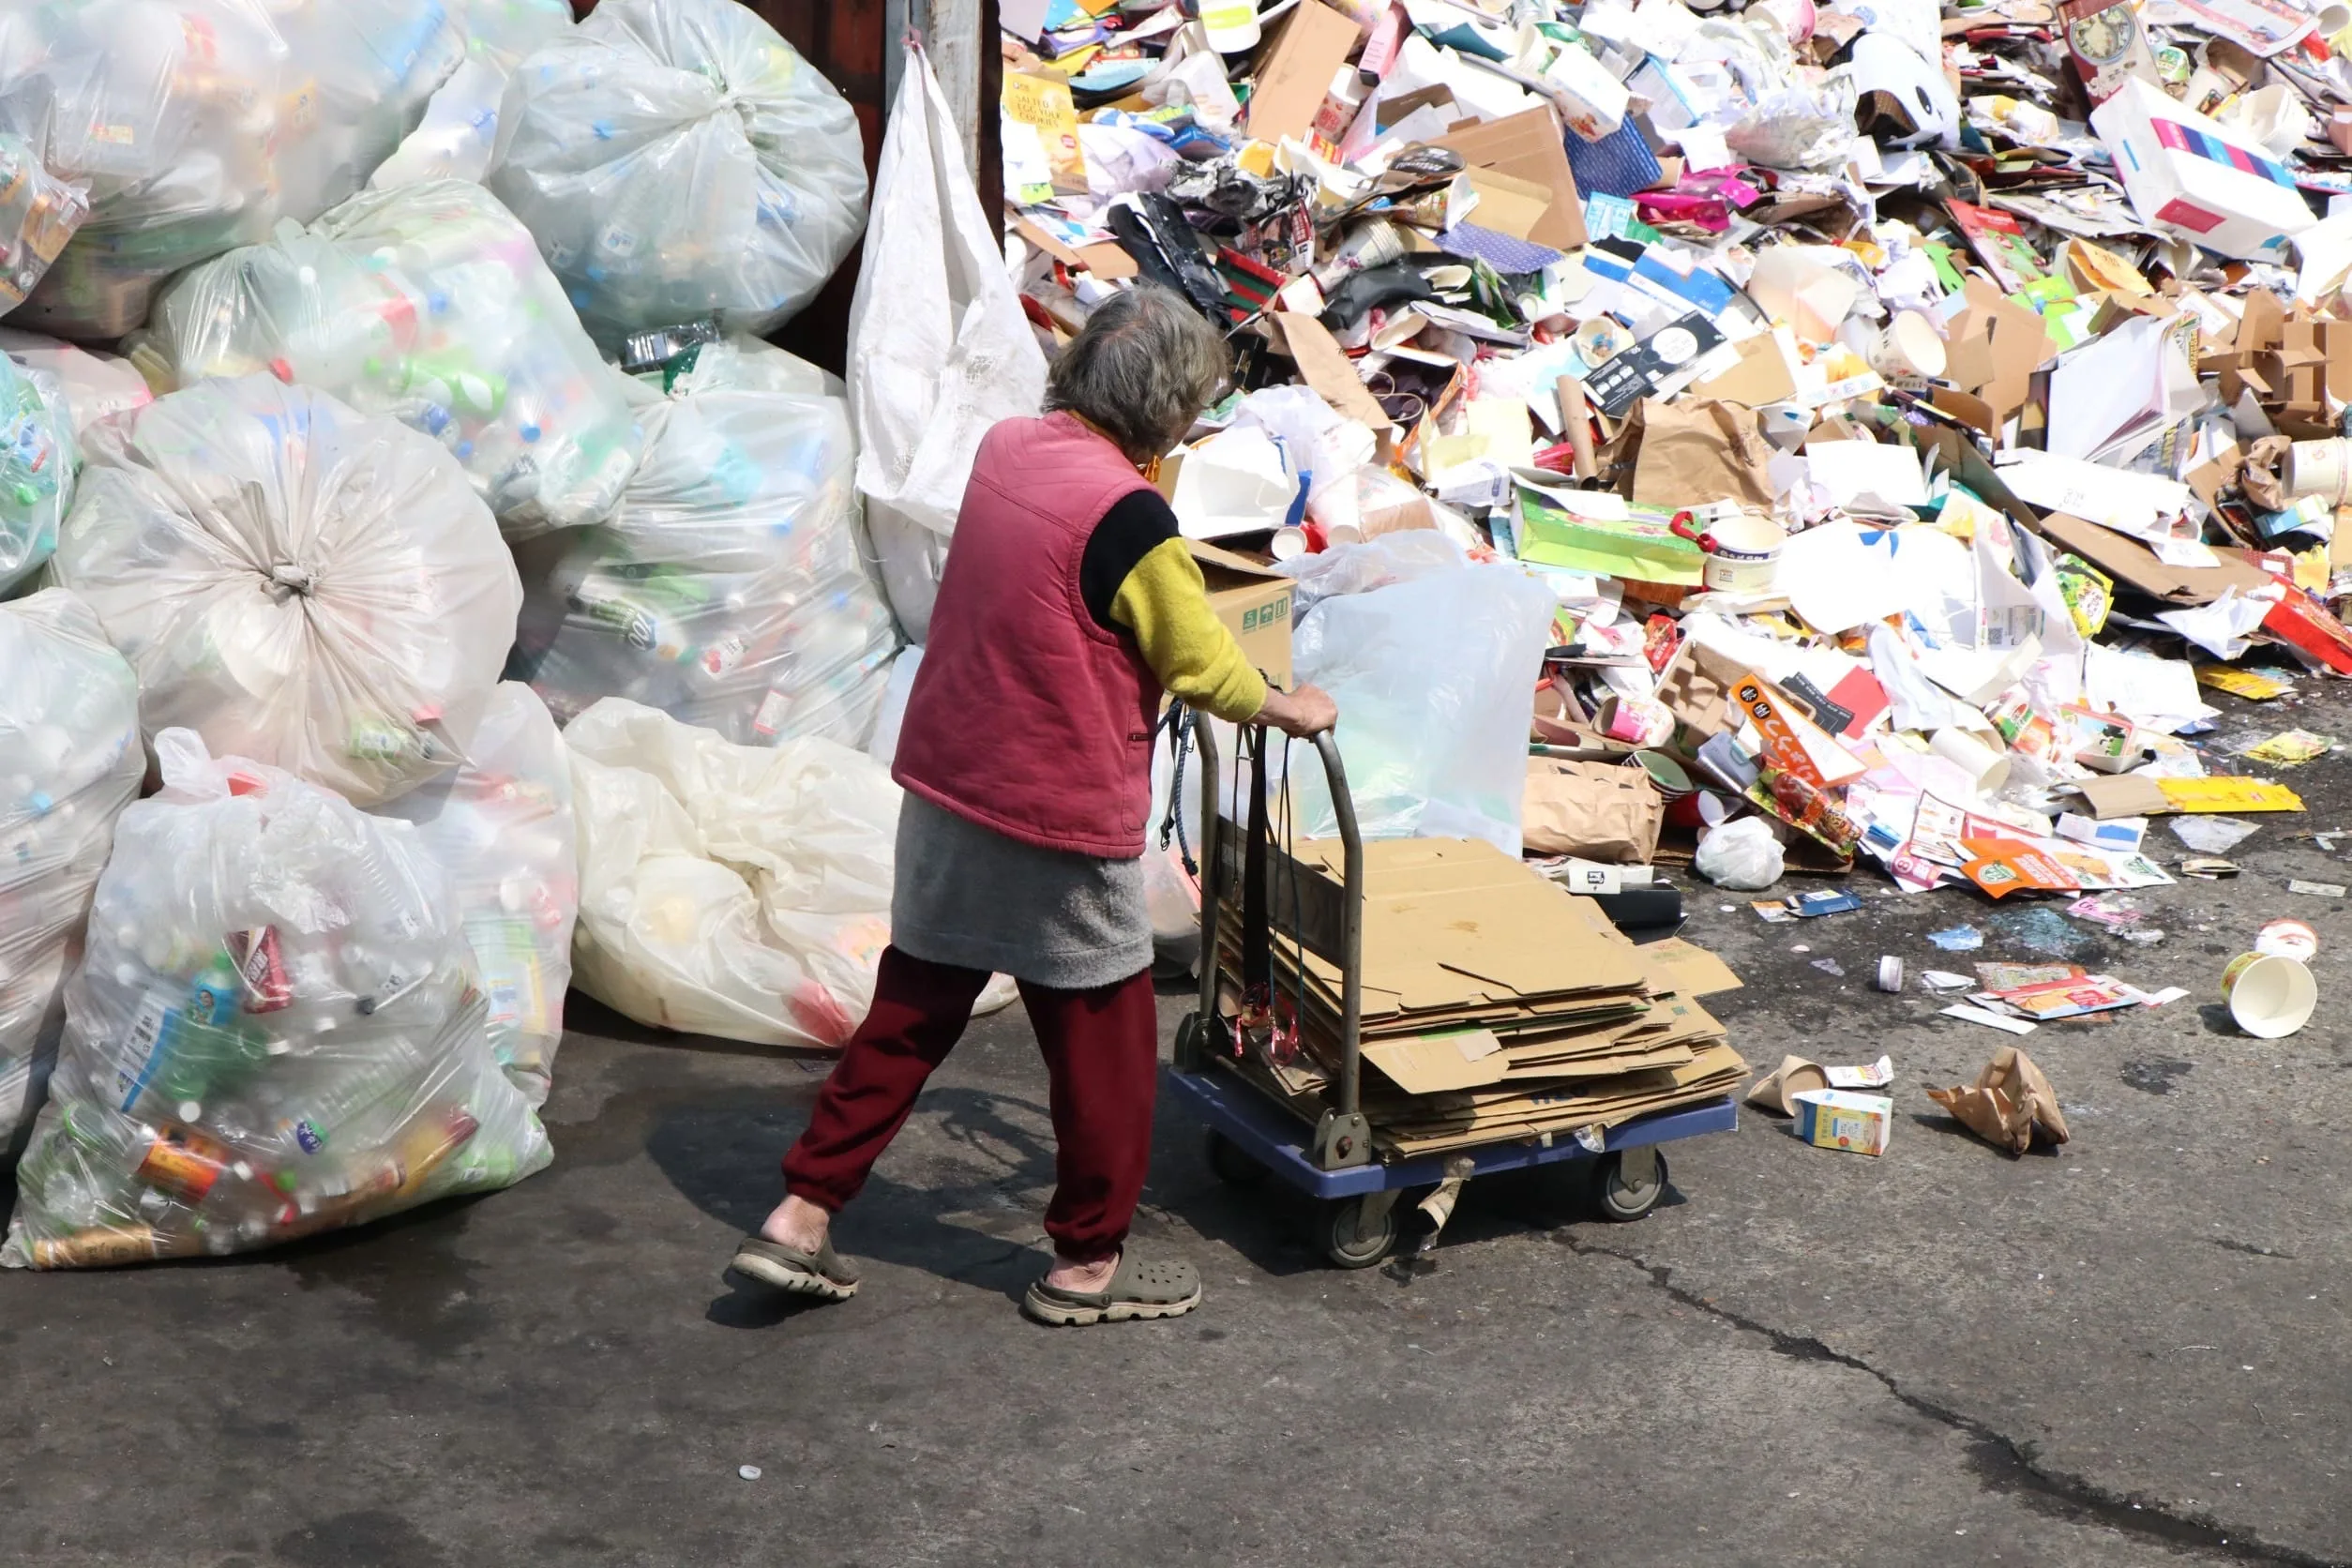 回收廠違法經營 環保衛生陷兩難